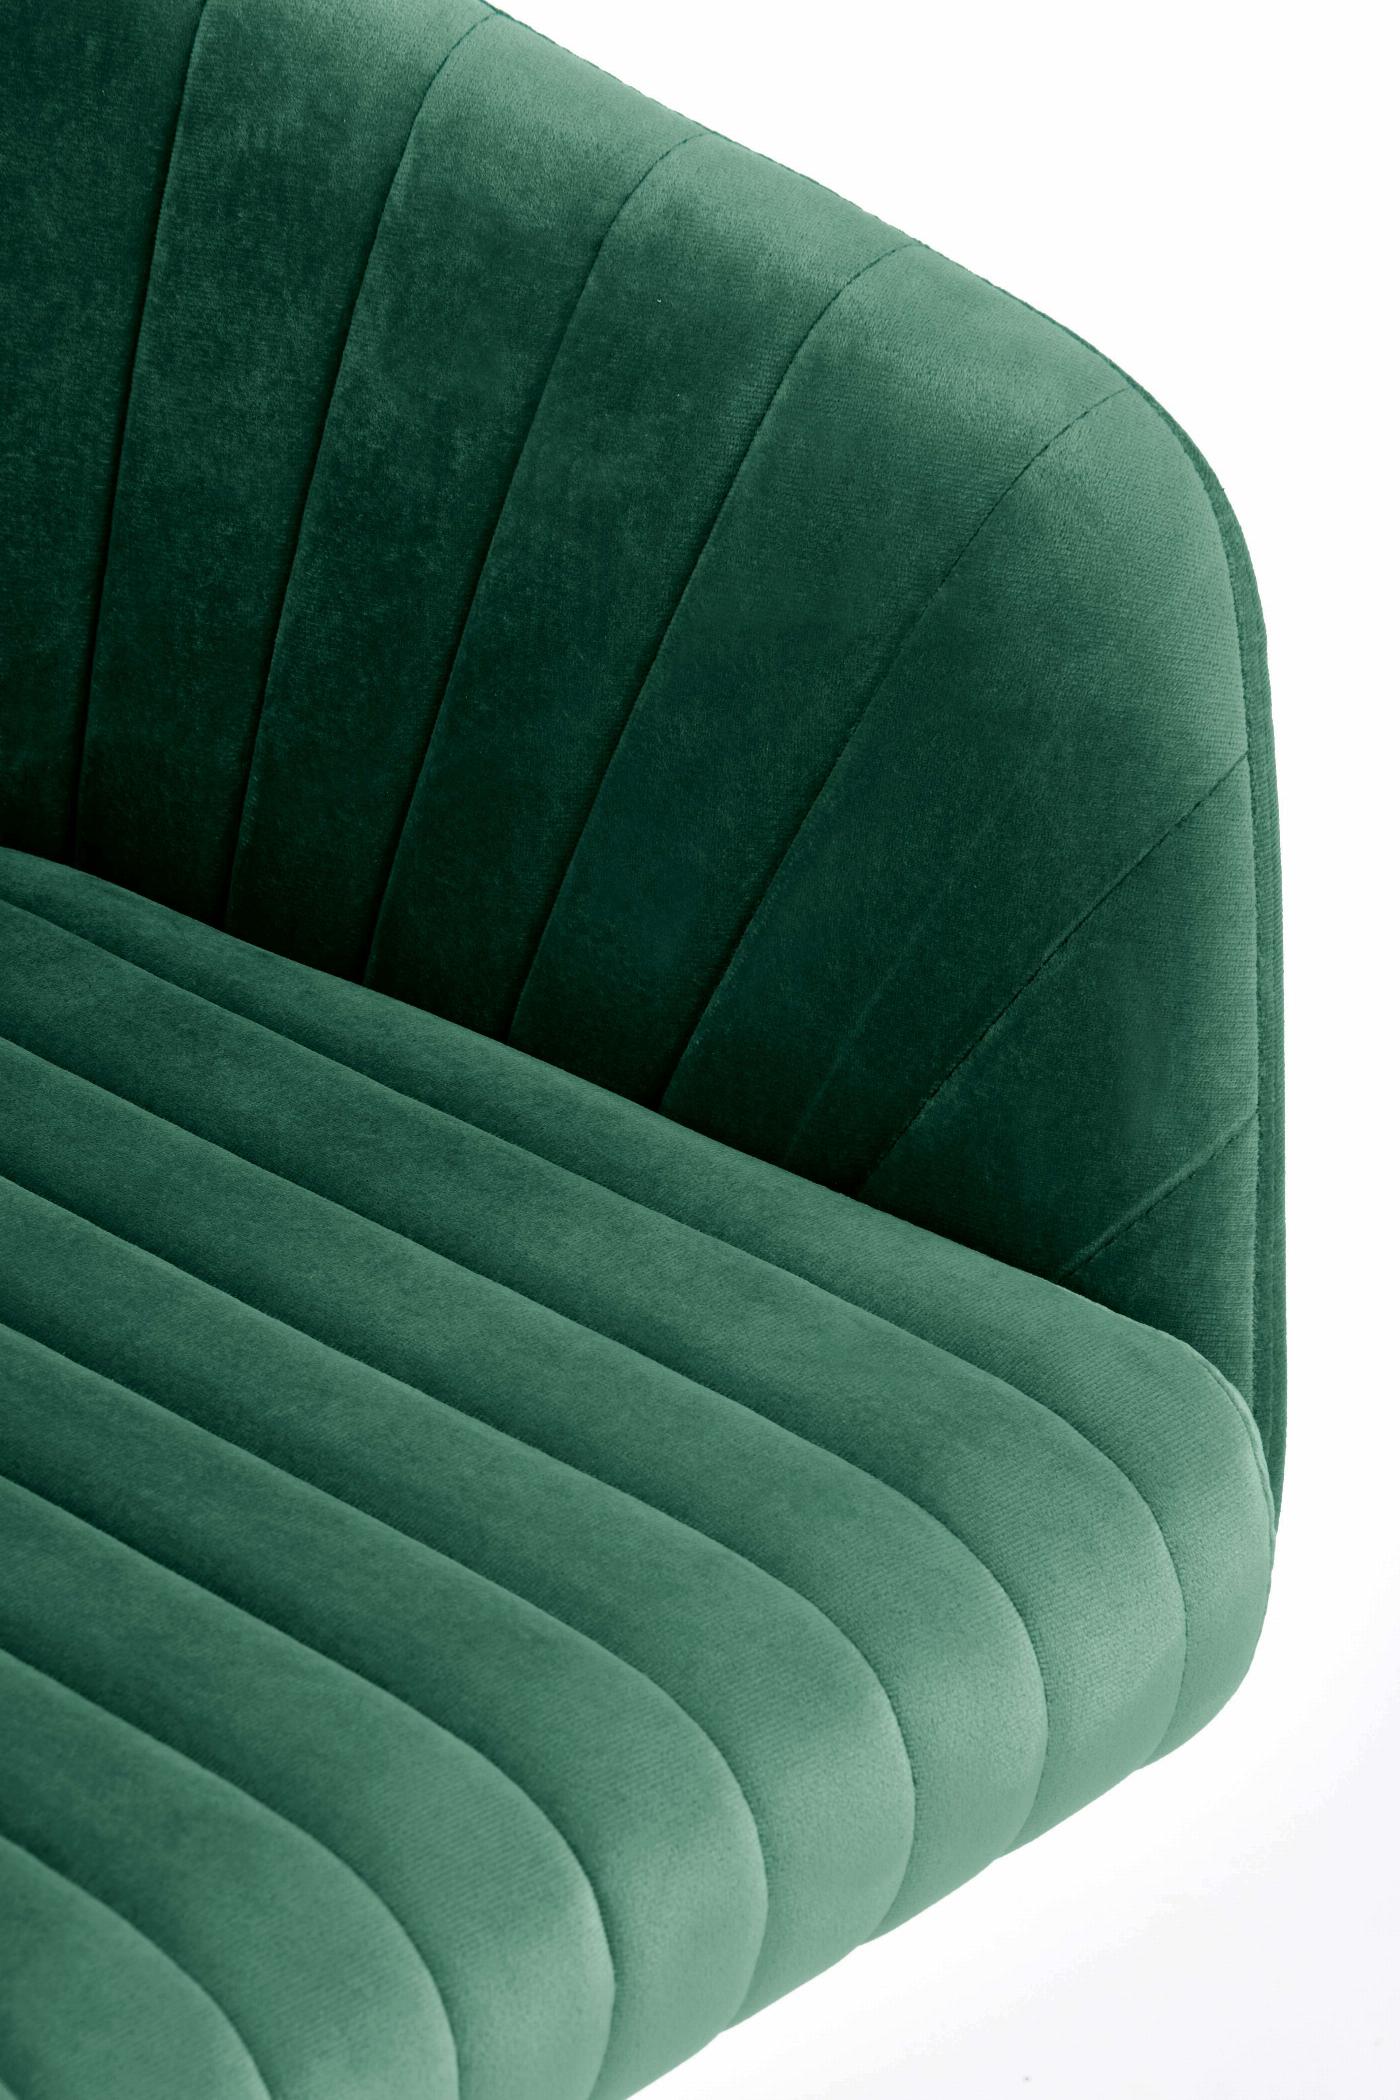 FRESCO fotel młodzieżowy ciemny zielony velvet